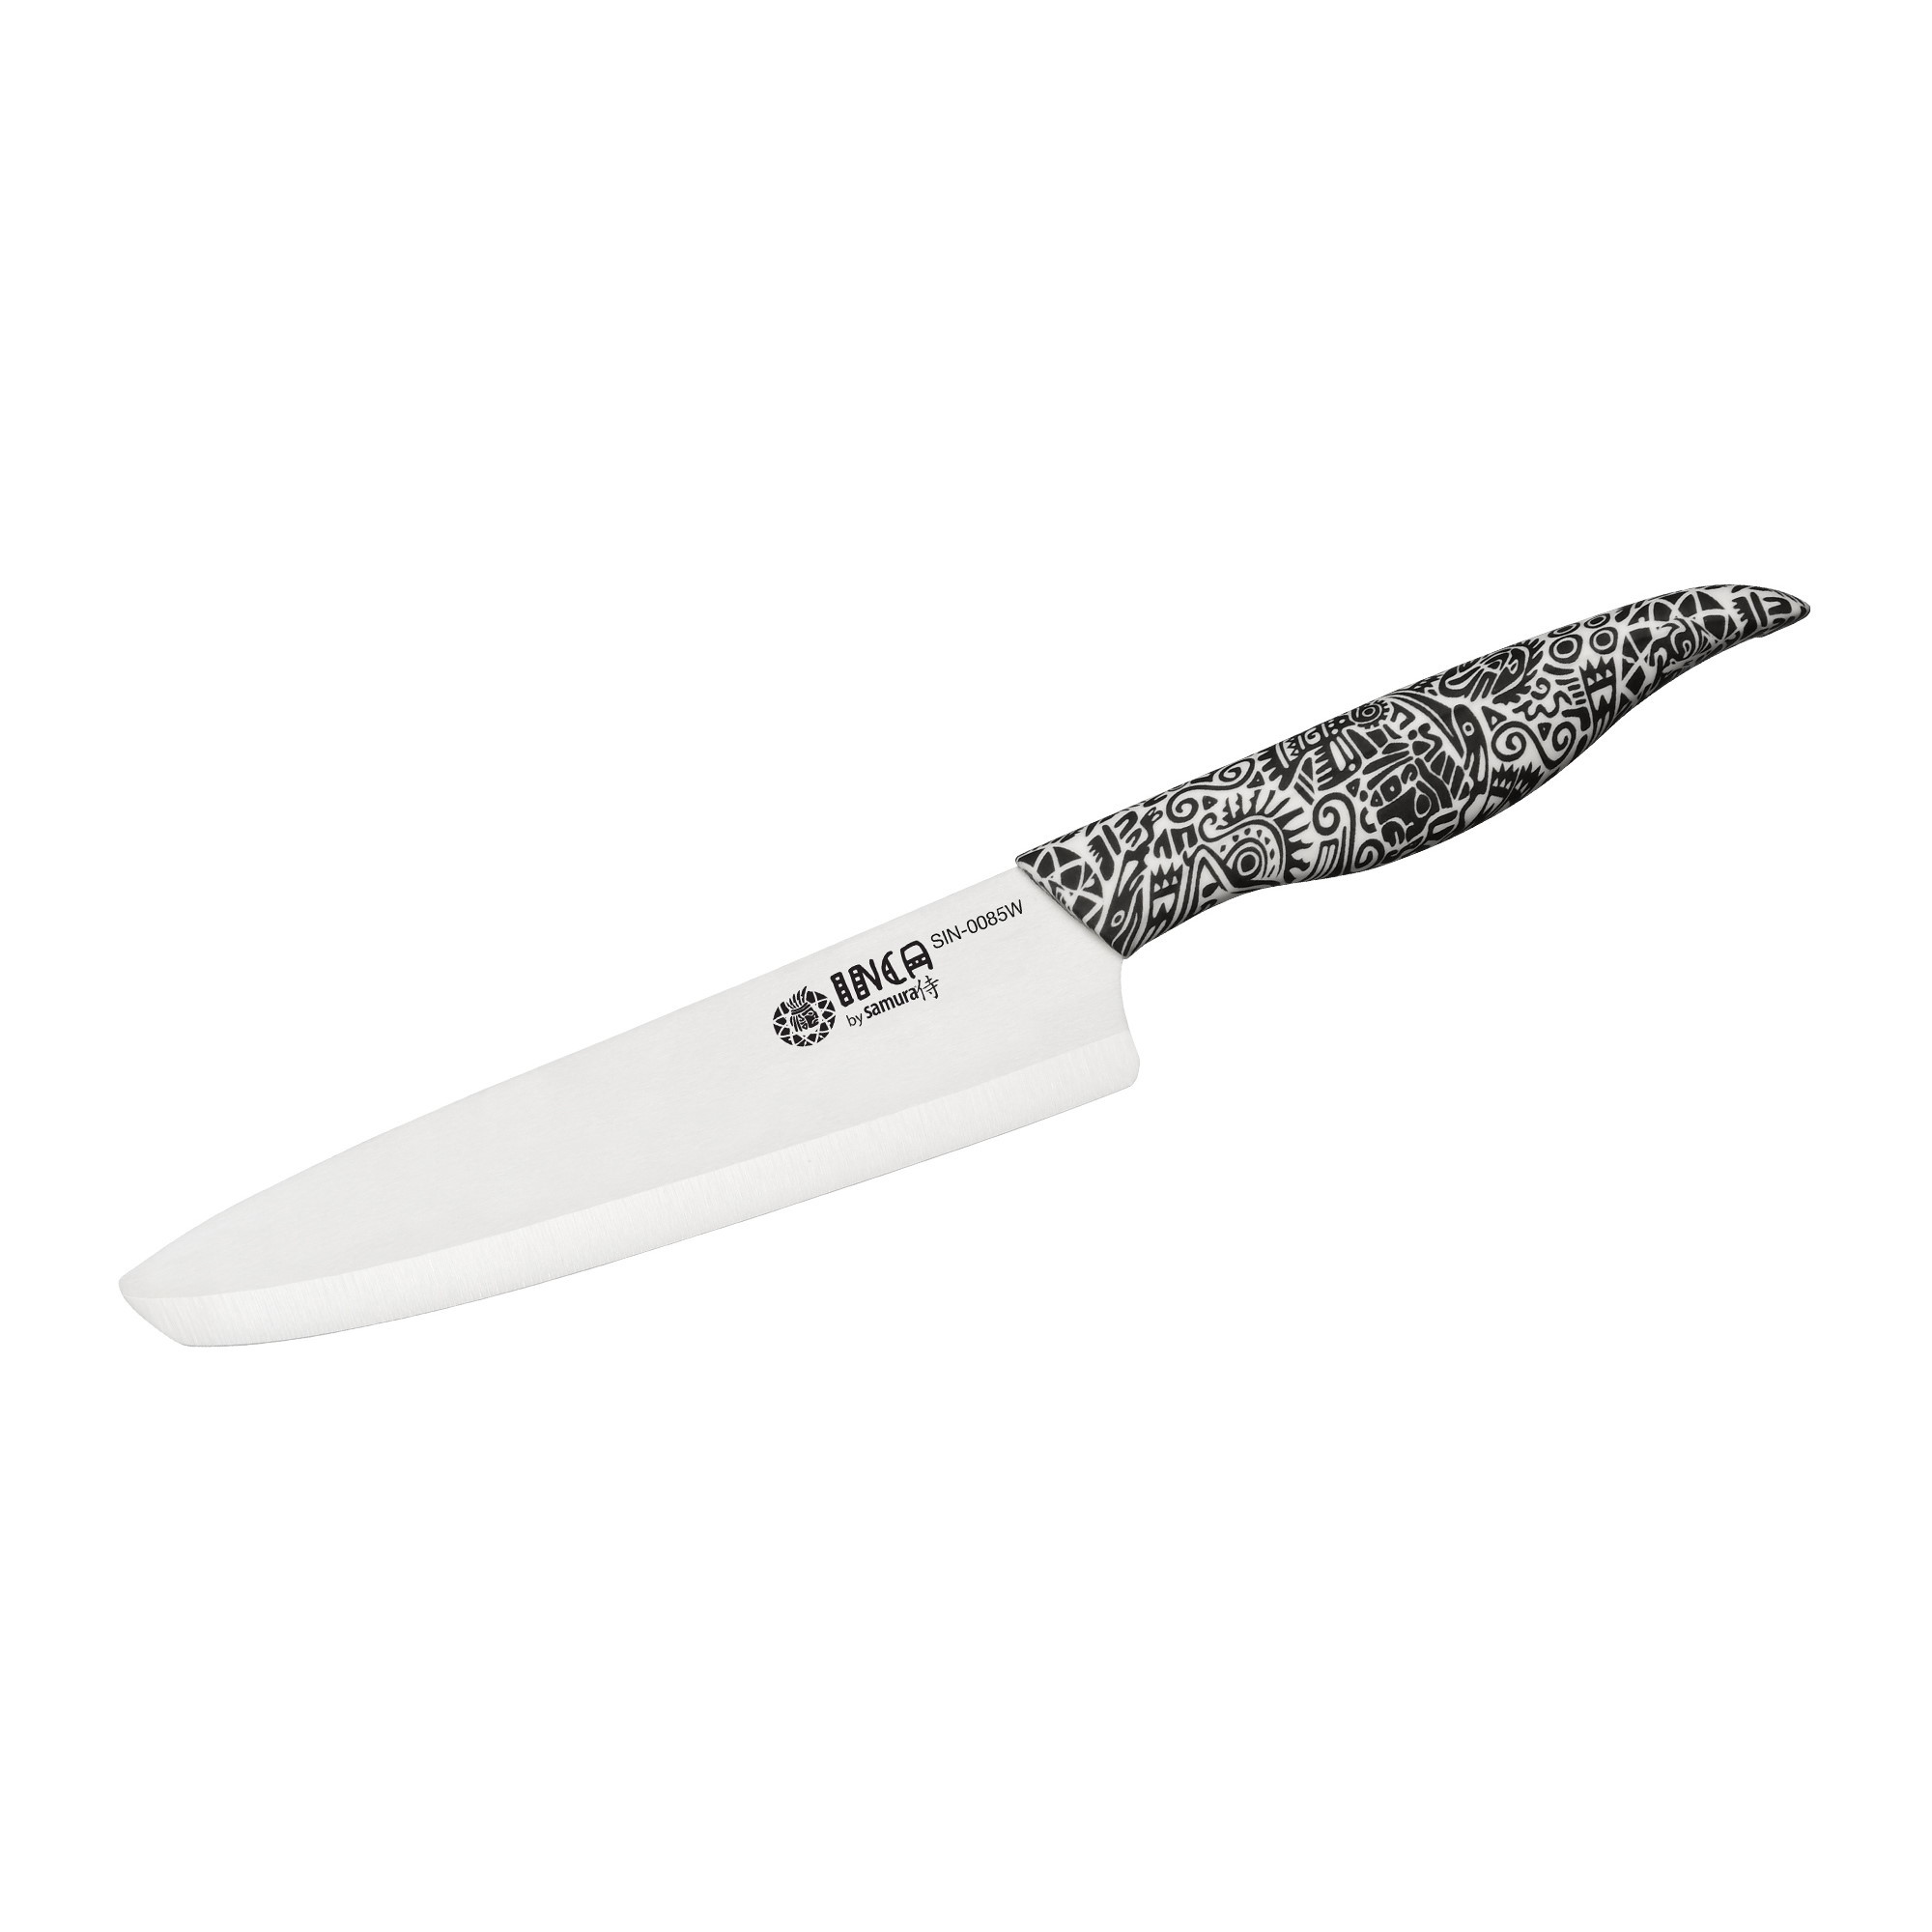 Нож кухонный Шеф Samura Inca 187 мм, белая циркониевая керамика, рукоять пластик